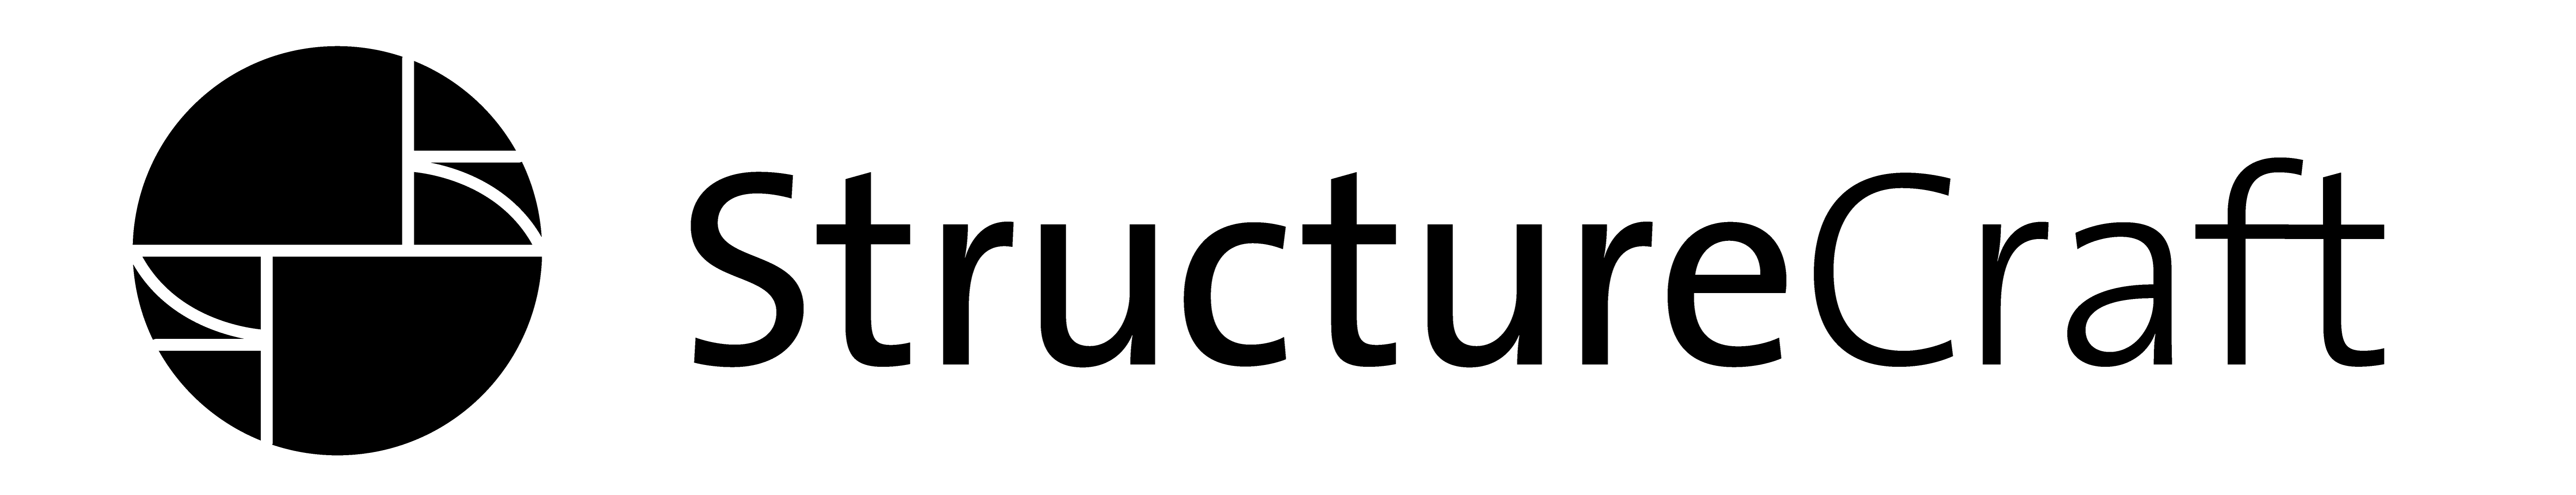 StructureCraft logo